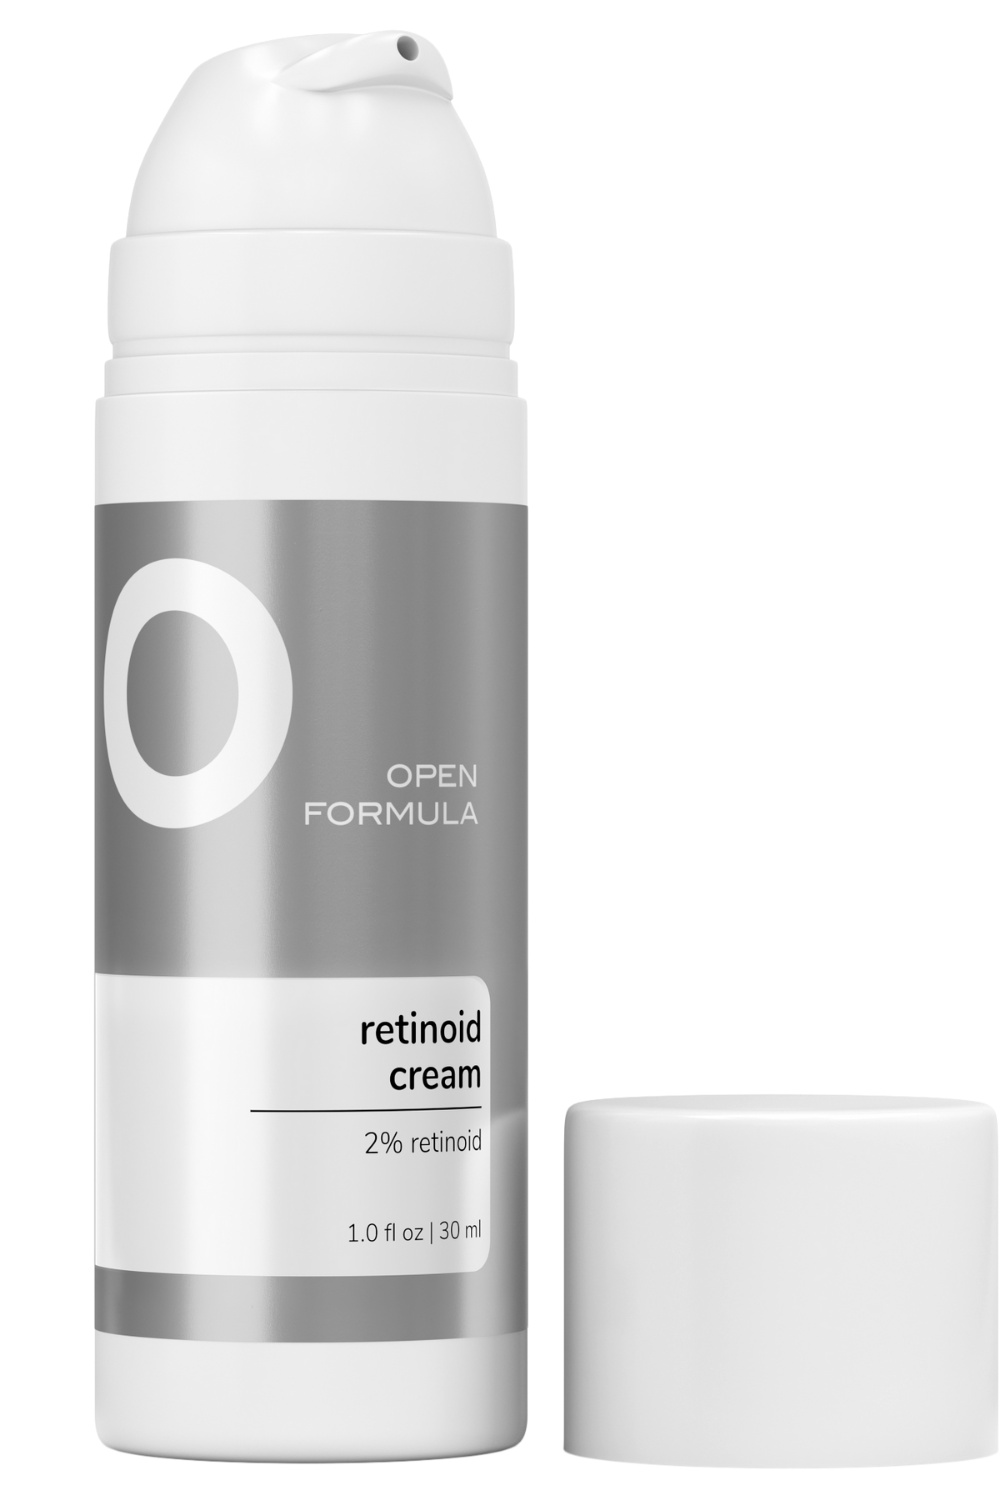 Open Formula Retinoid Cream (2.0% Retinoid)